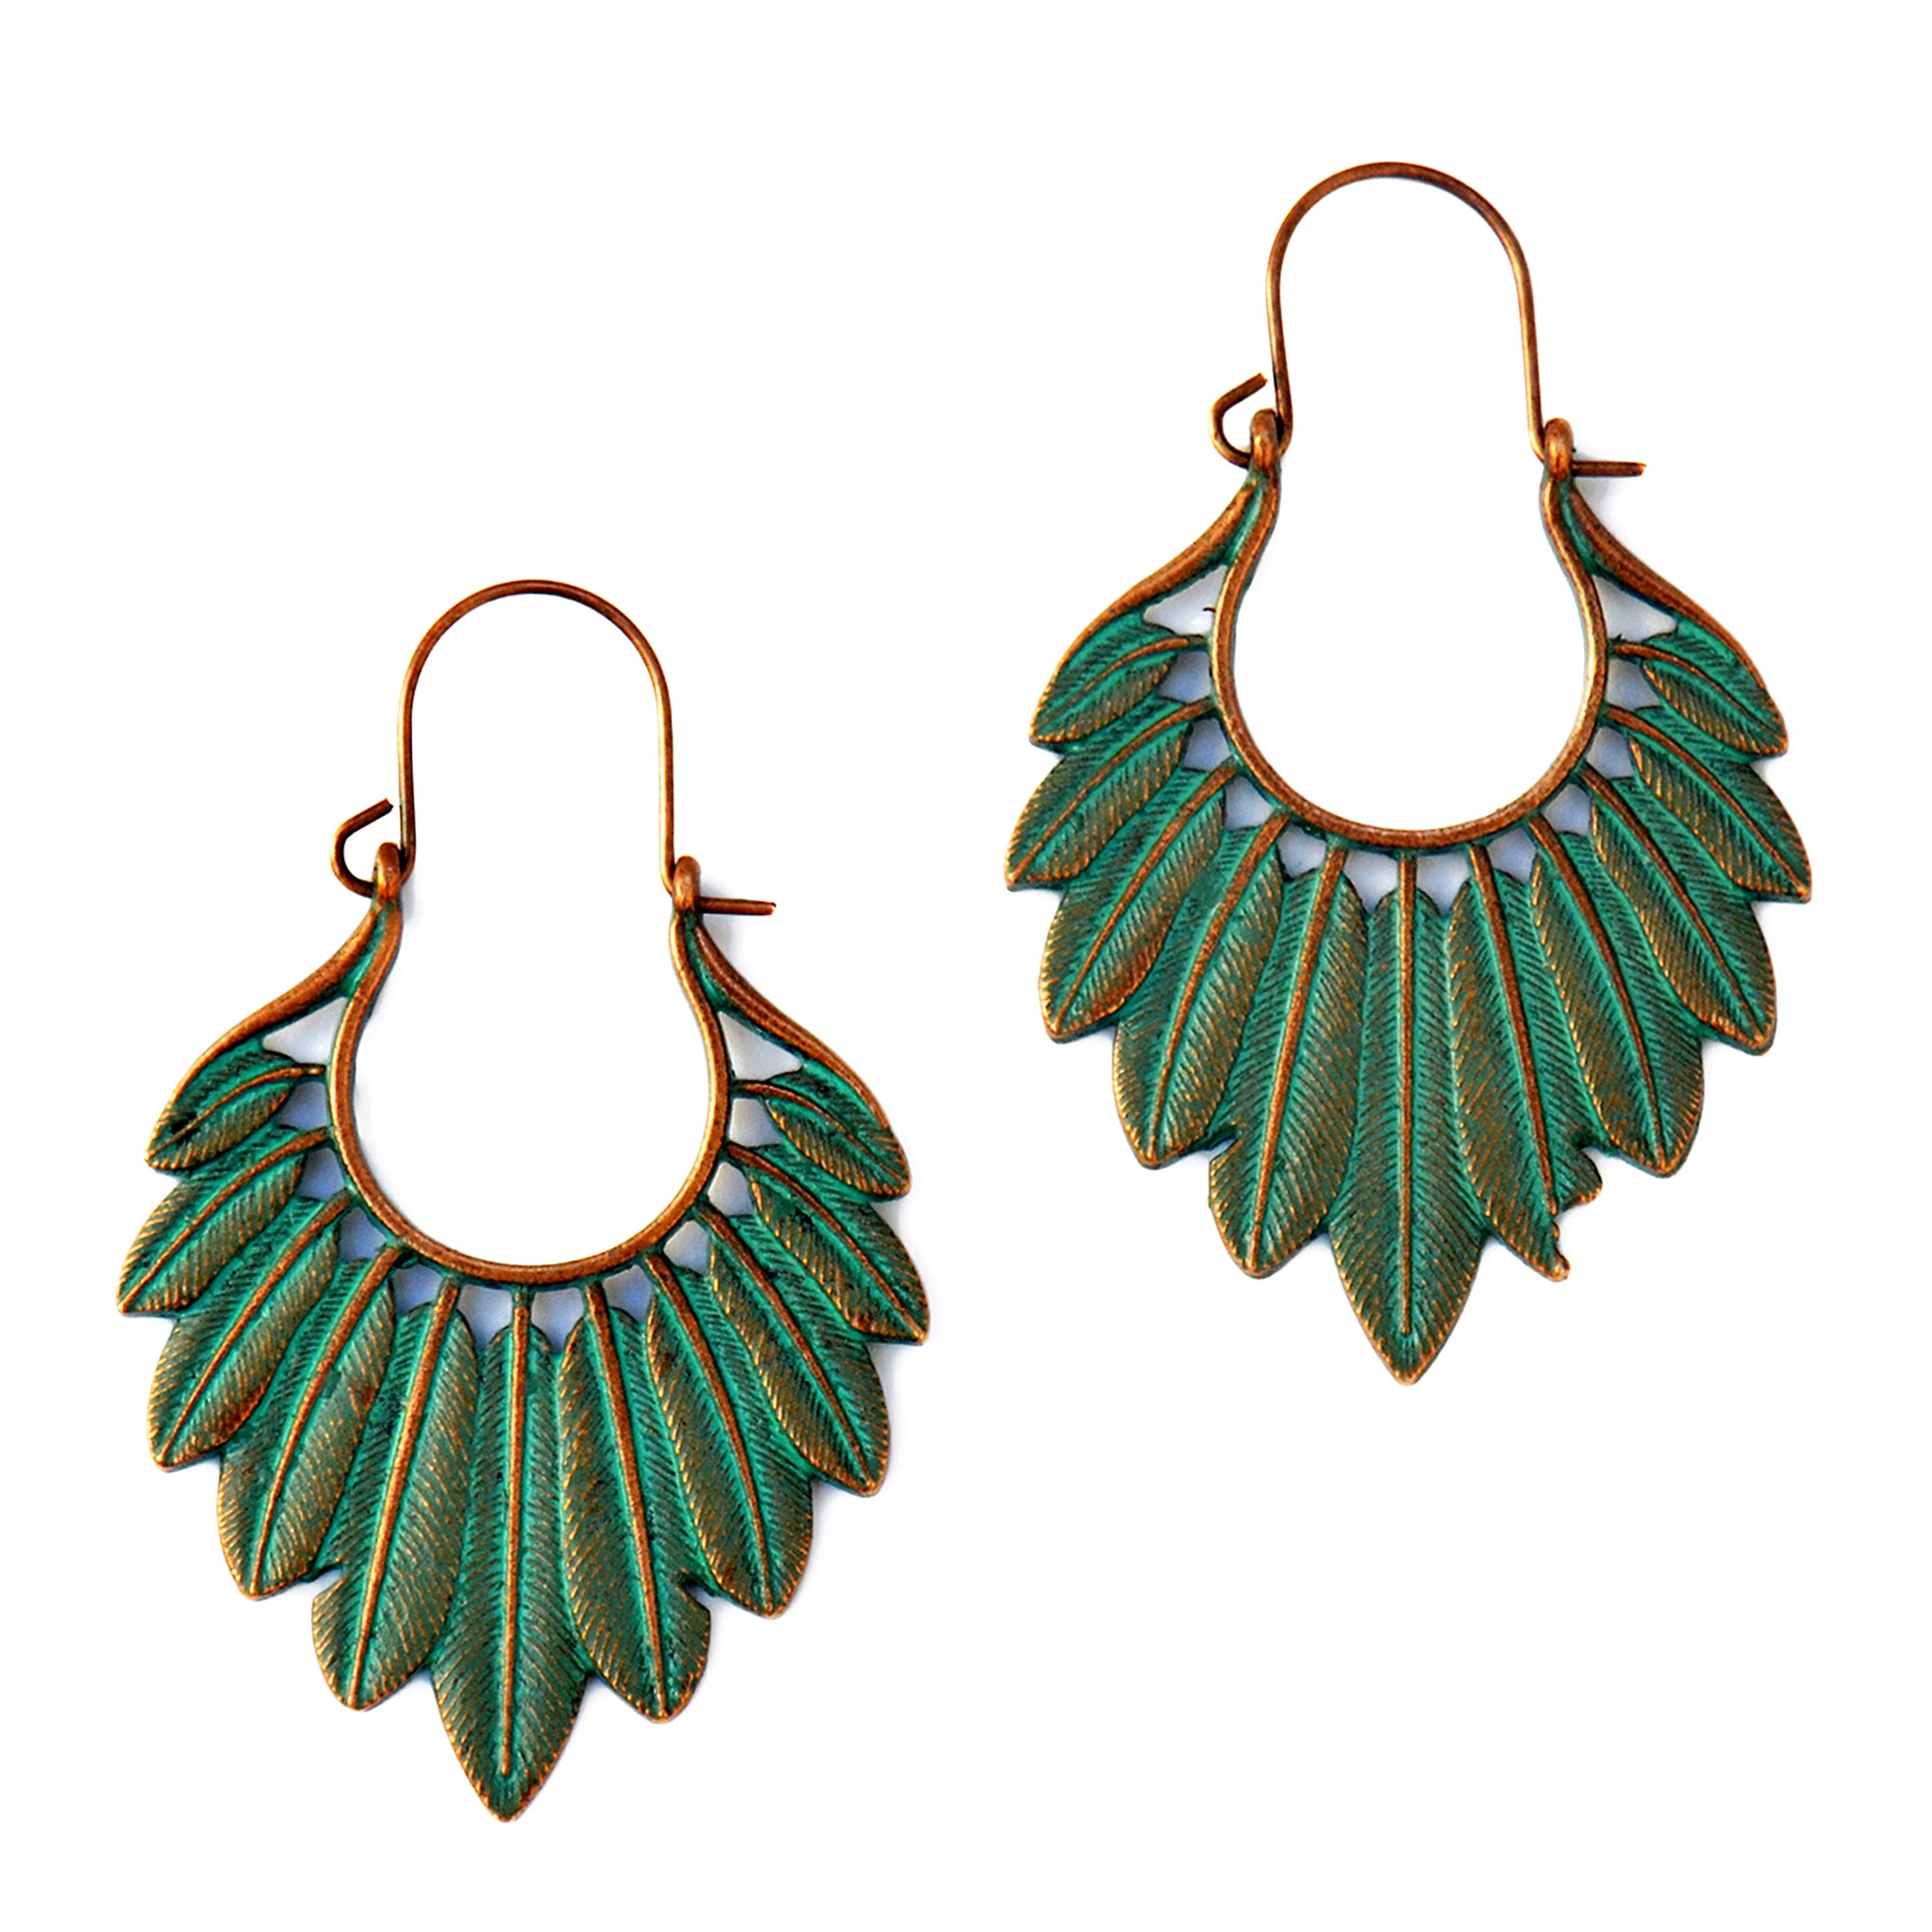 Ethnic feather earrings verdigris